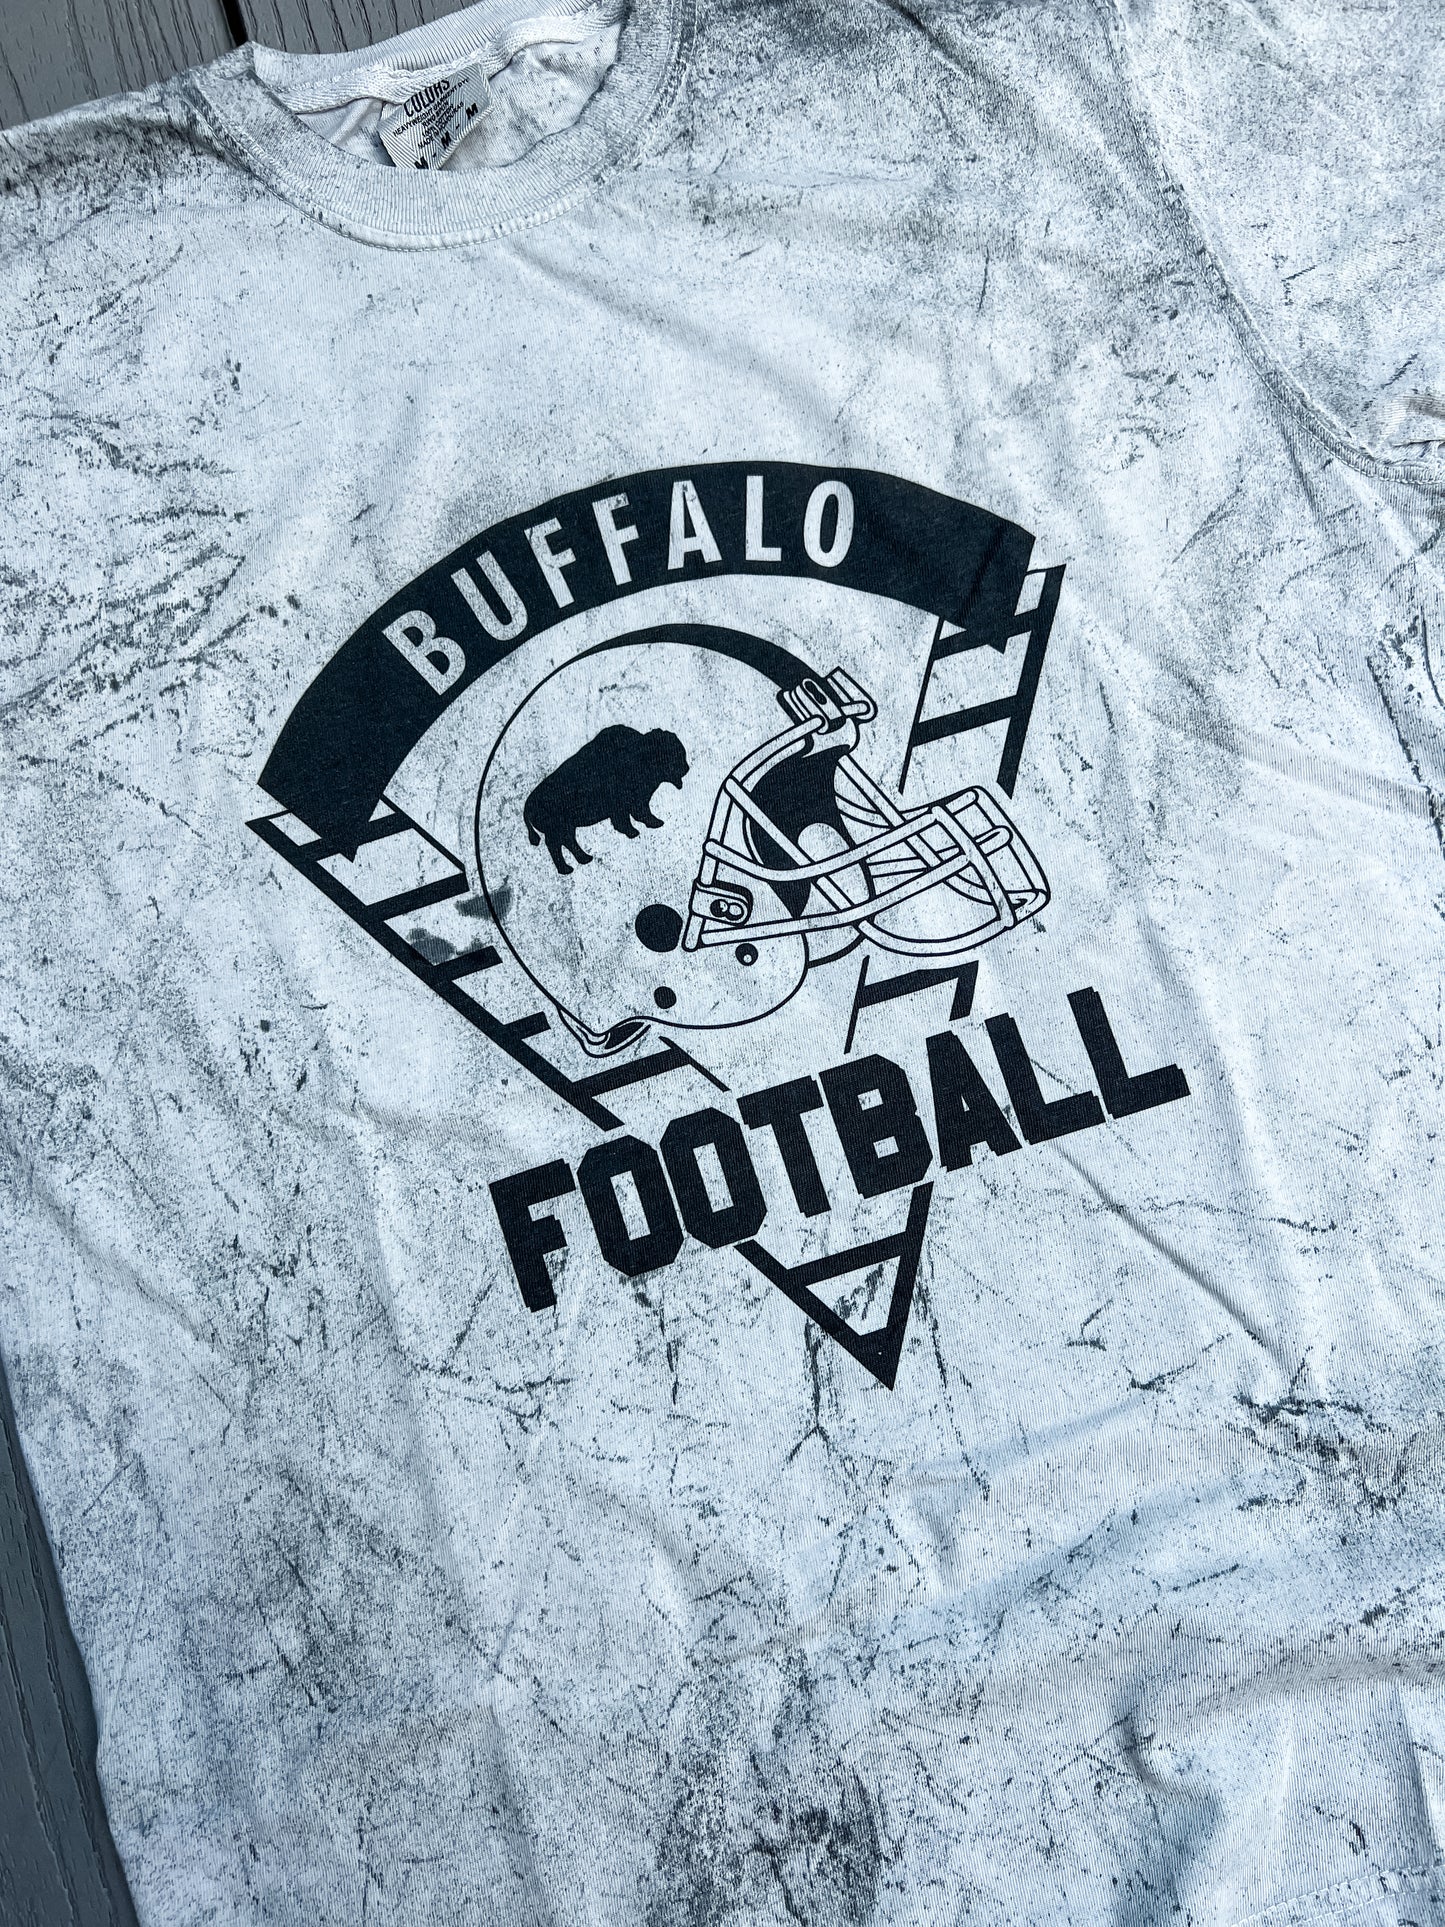 Buffalo football tie-dye tee, Buffalo tee, Buffalo football vintage tee